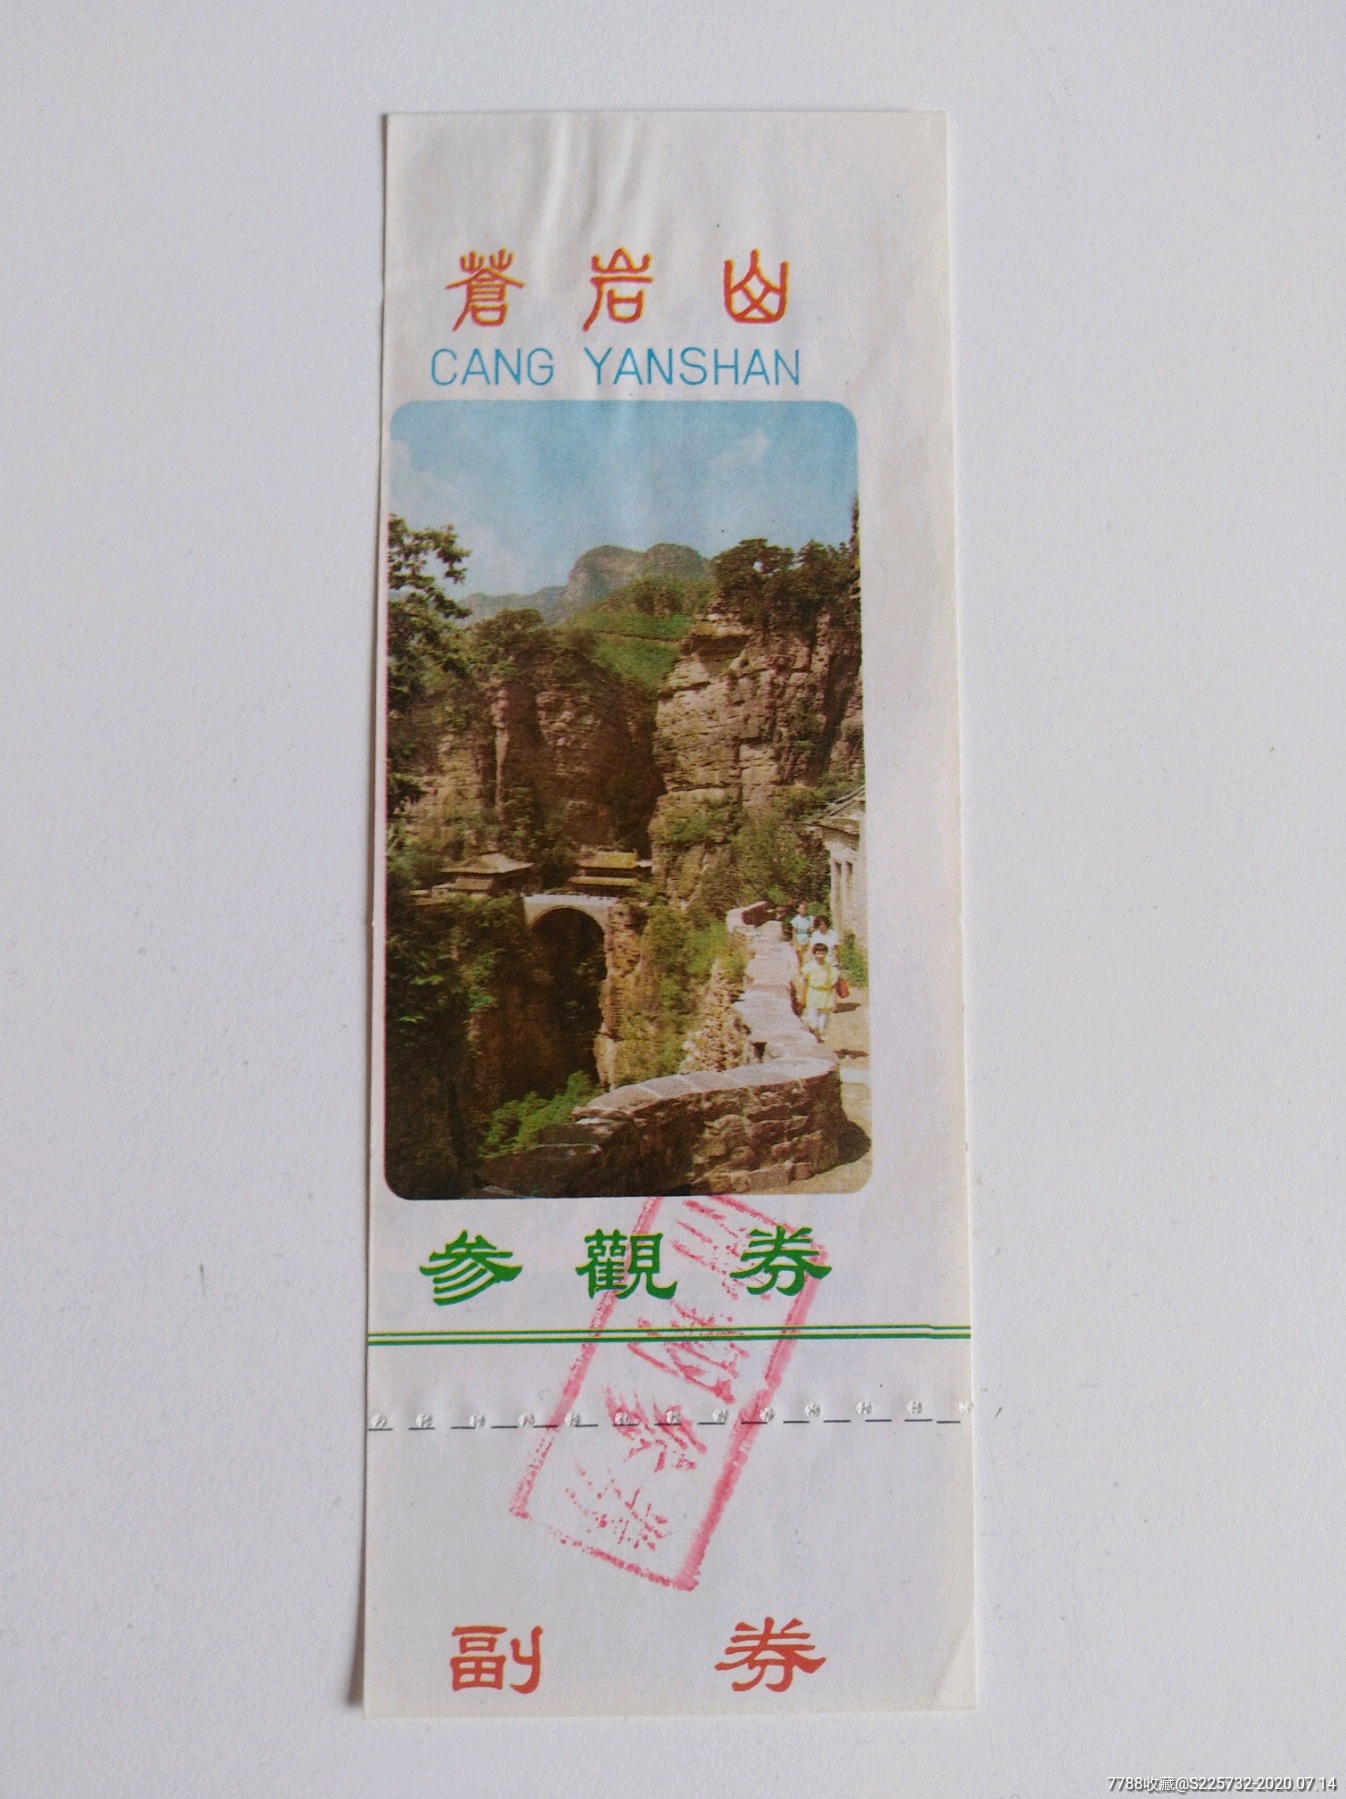 圣迹苍岩旅游区门票图片